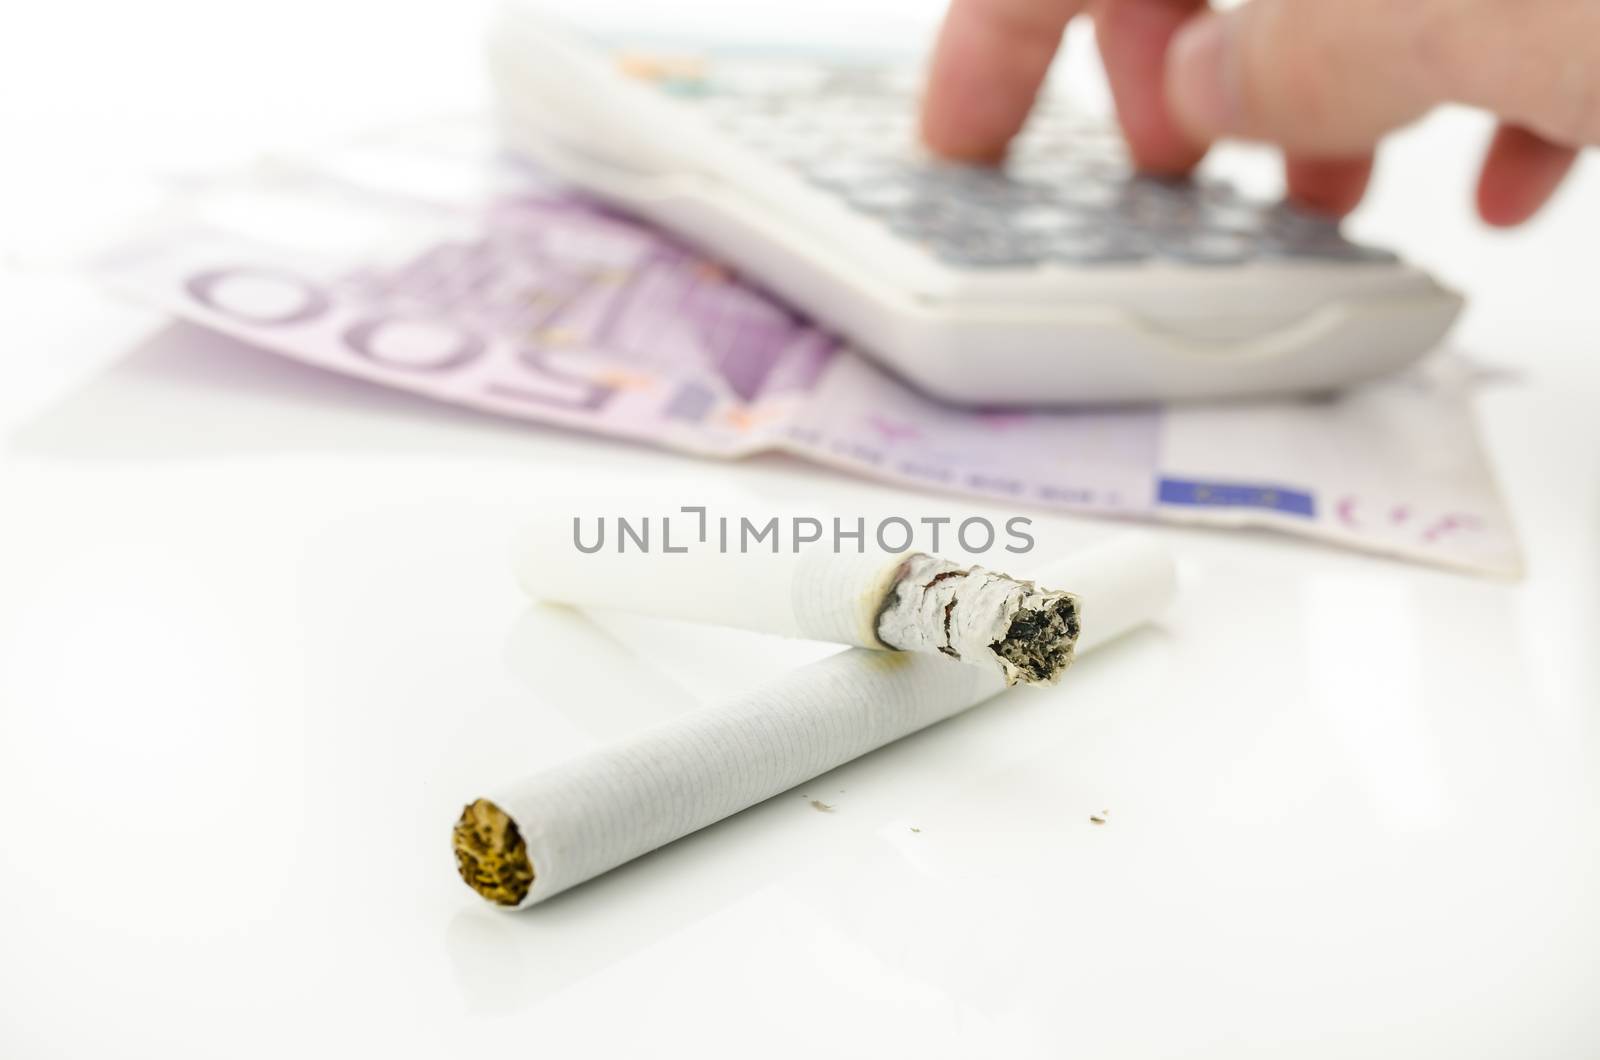 Expensive smoking addiction by Gajus